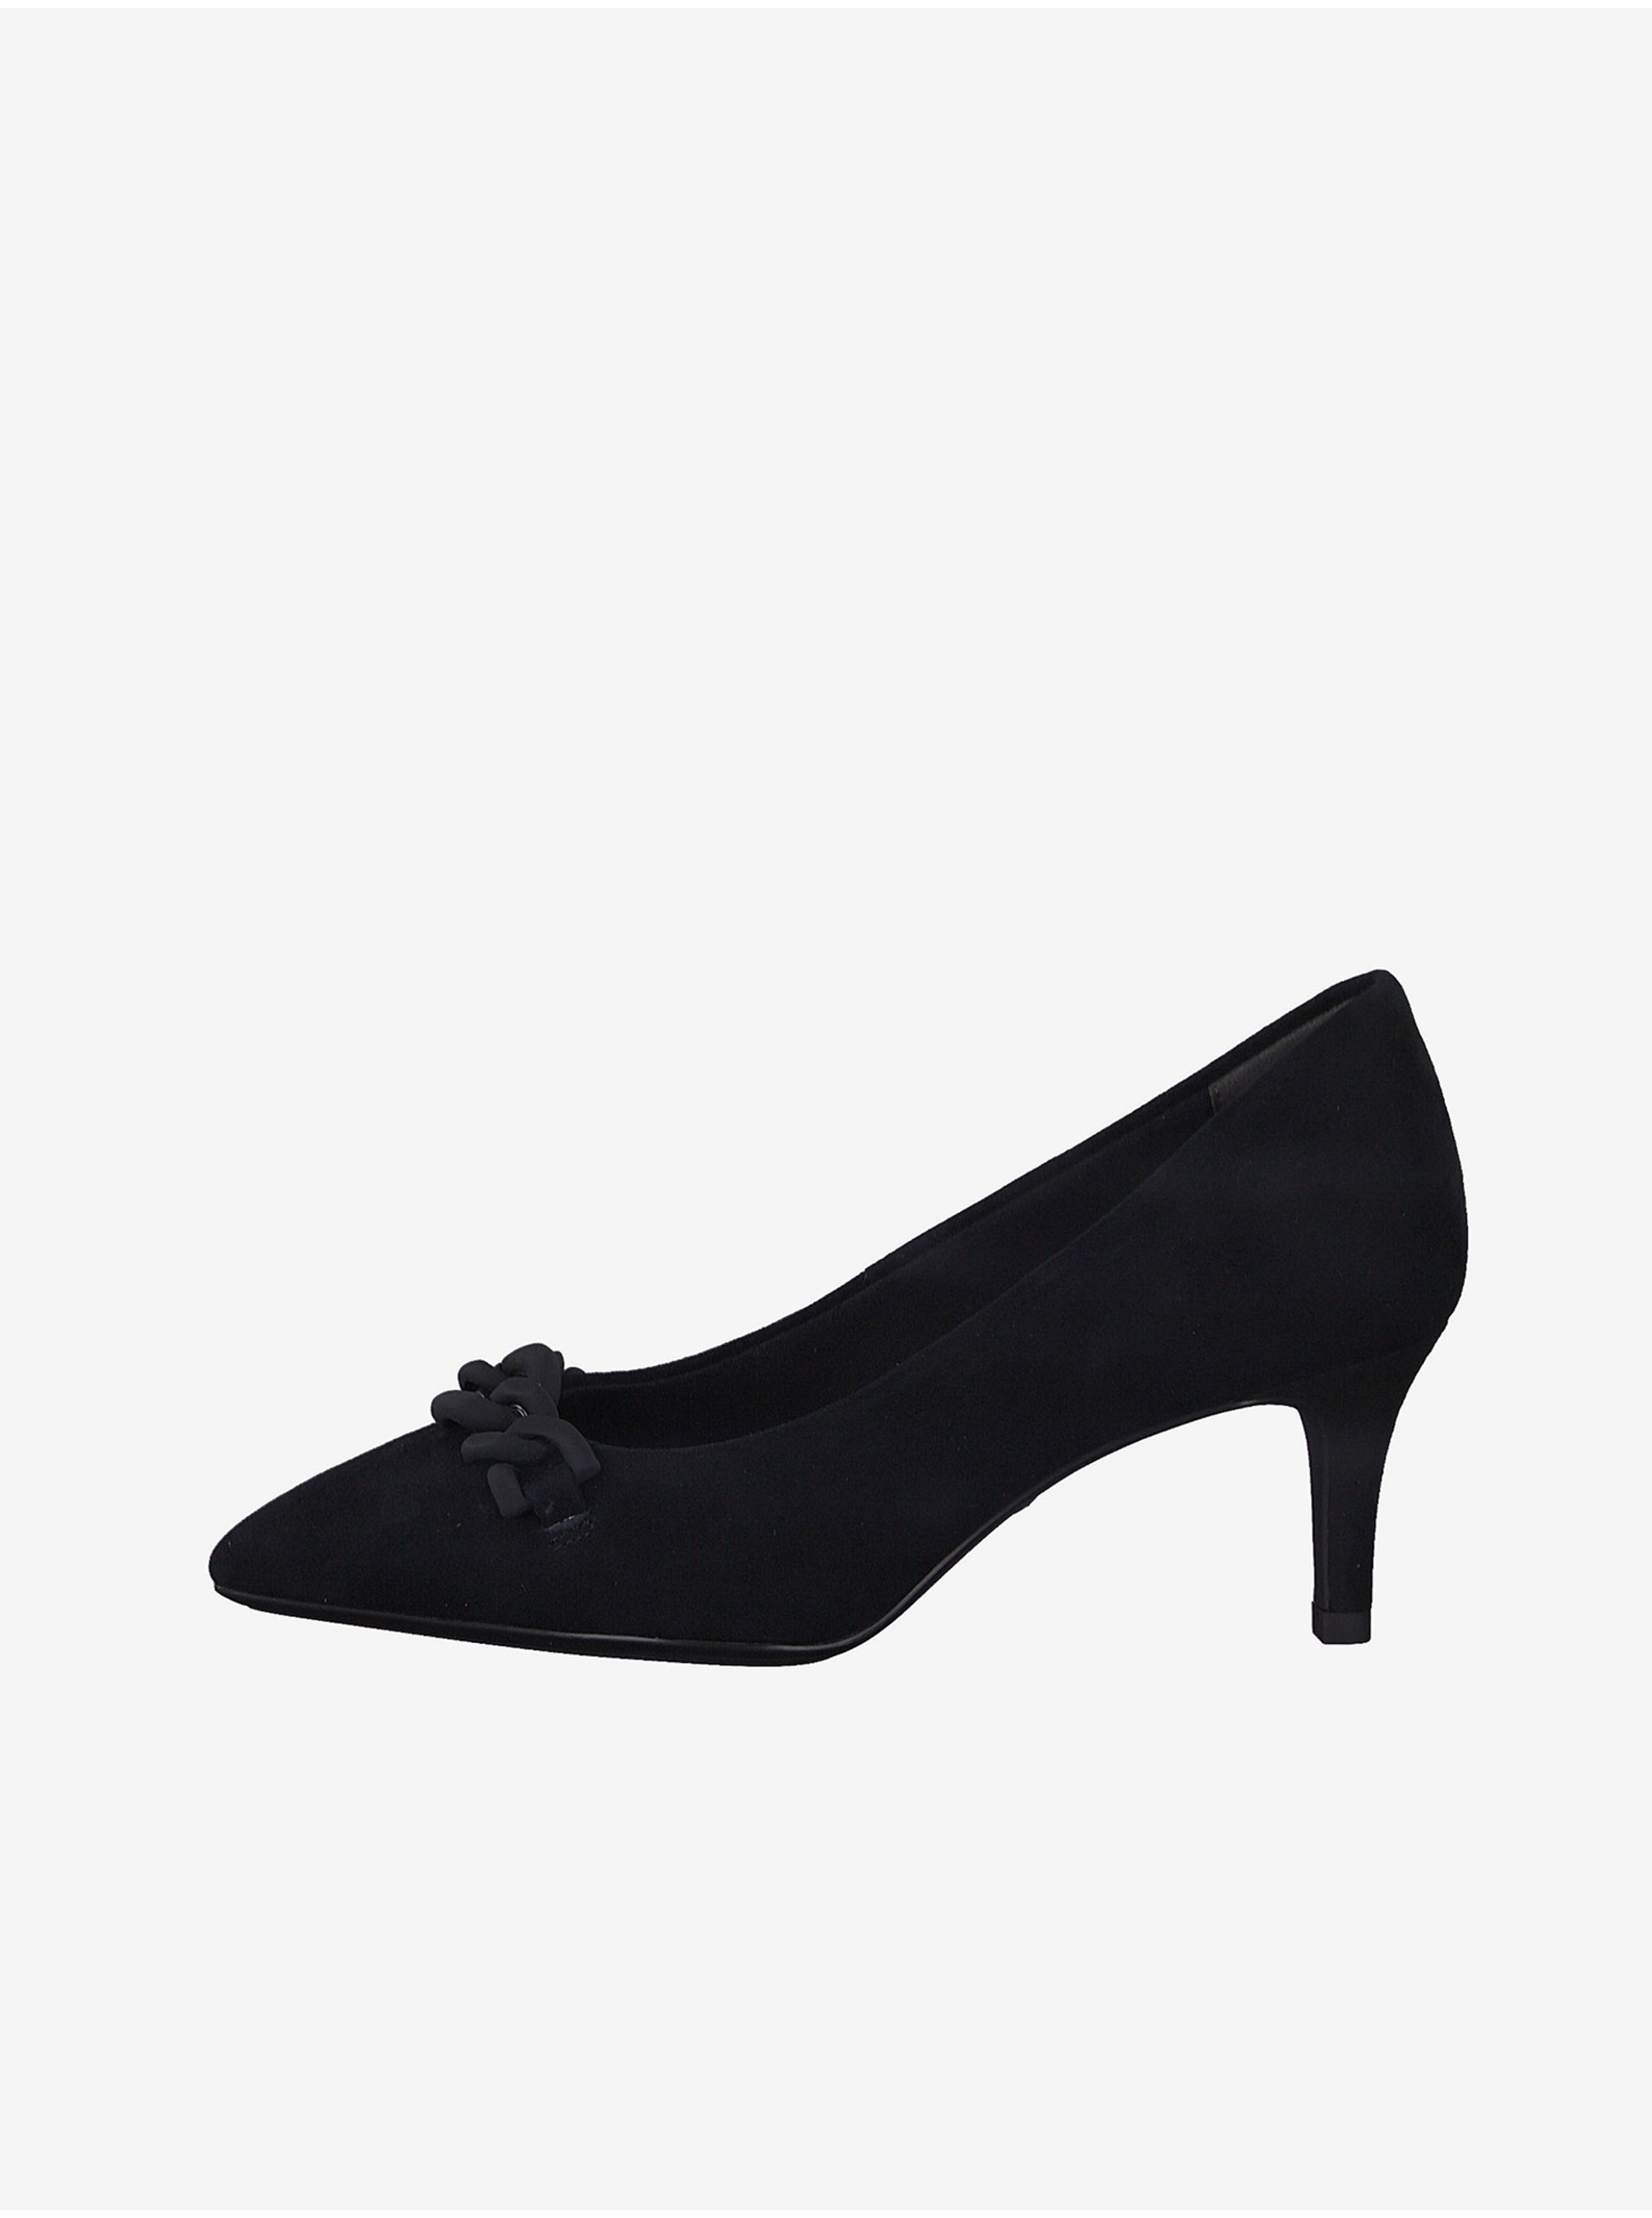 Tamaris Black Leather Heel Pumps - Women